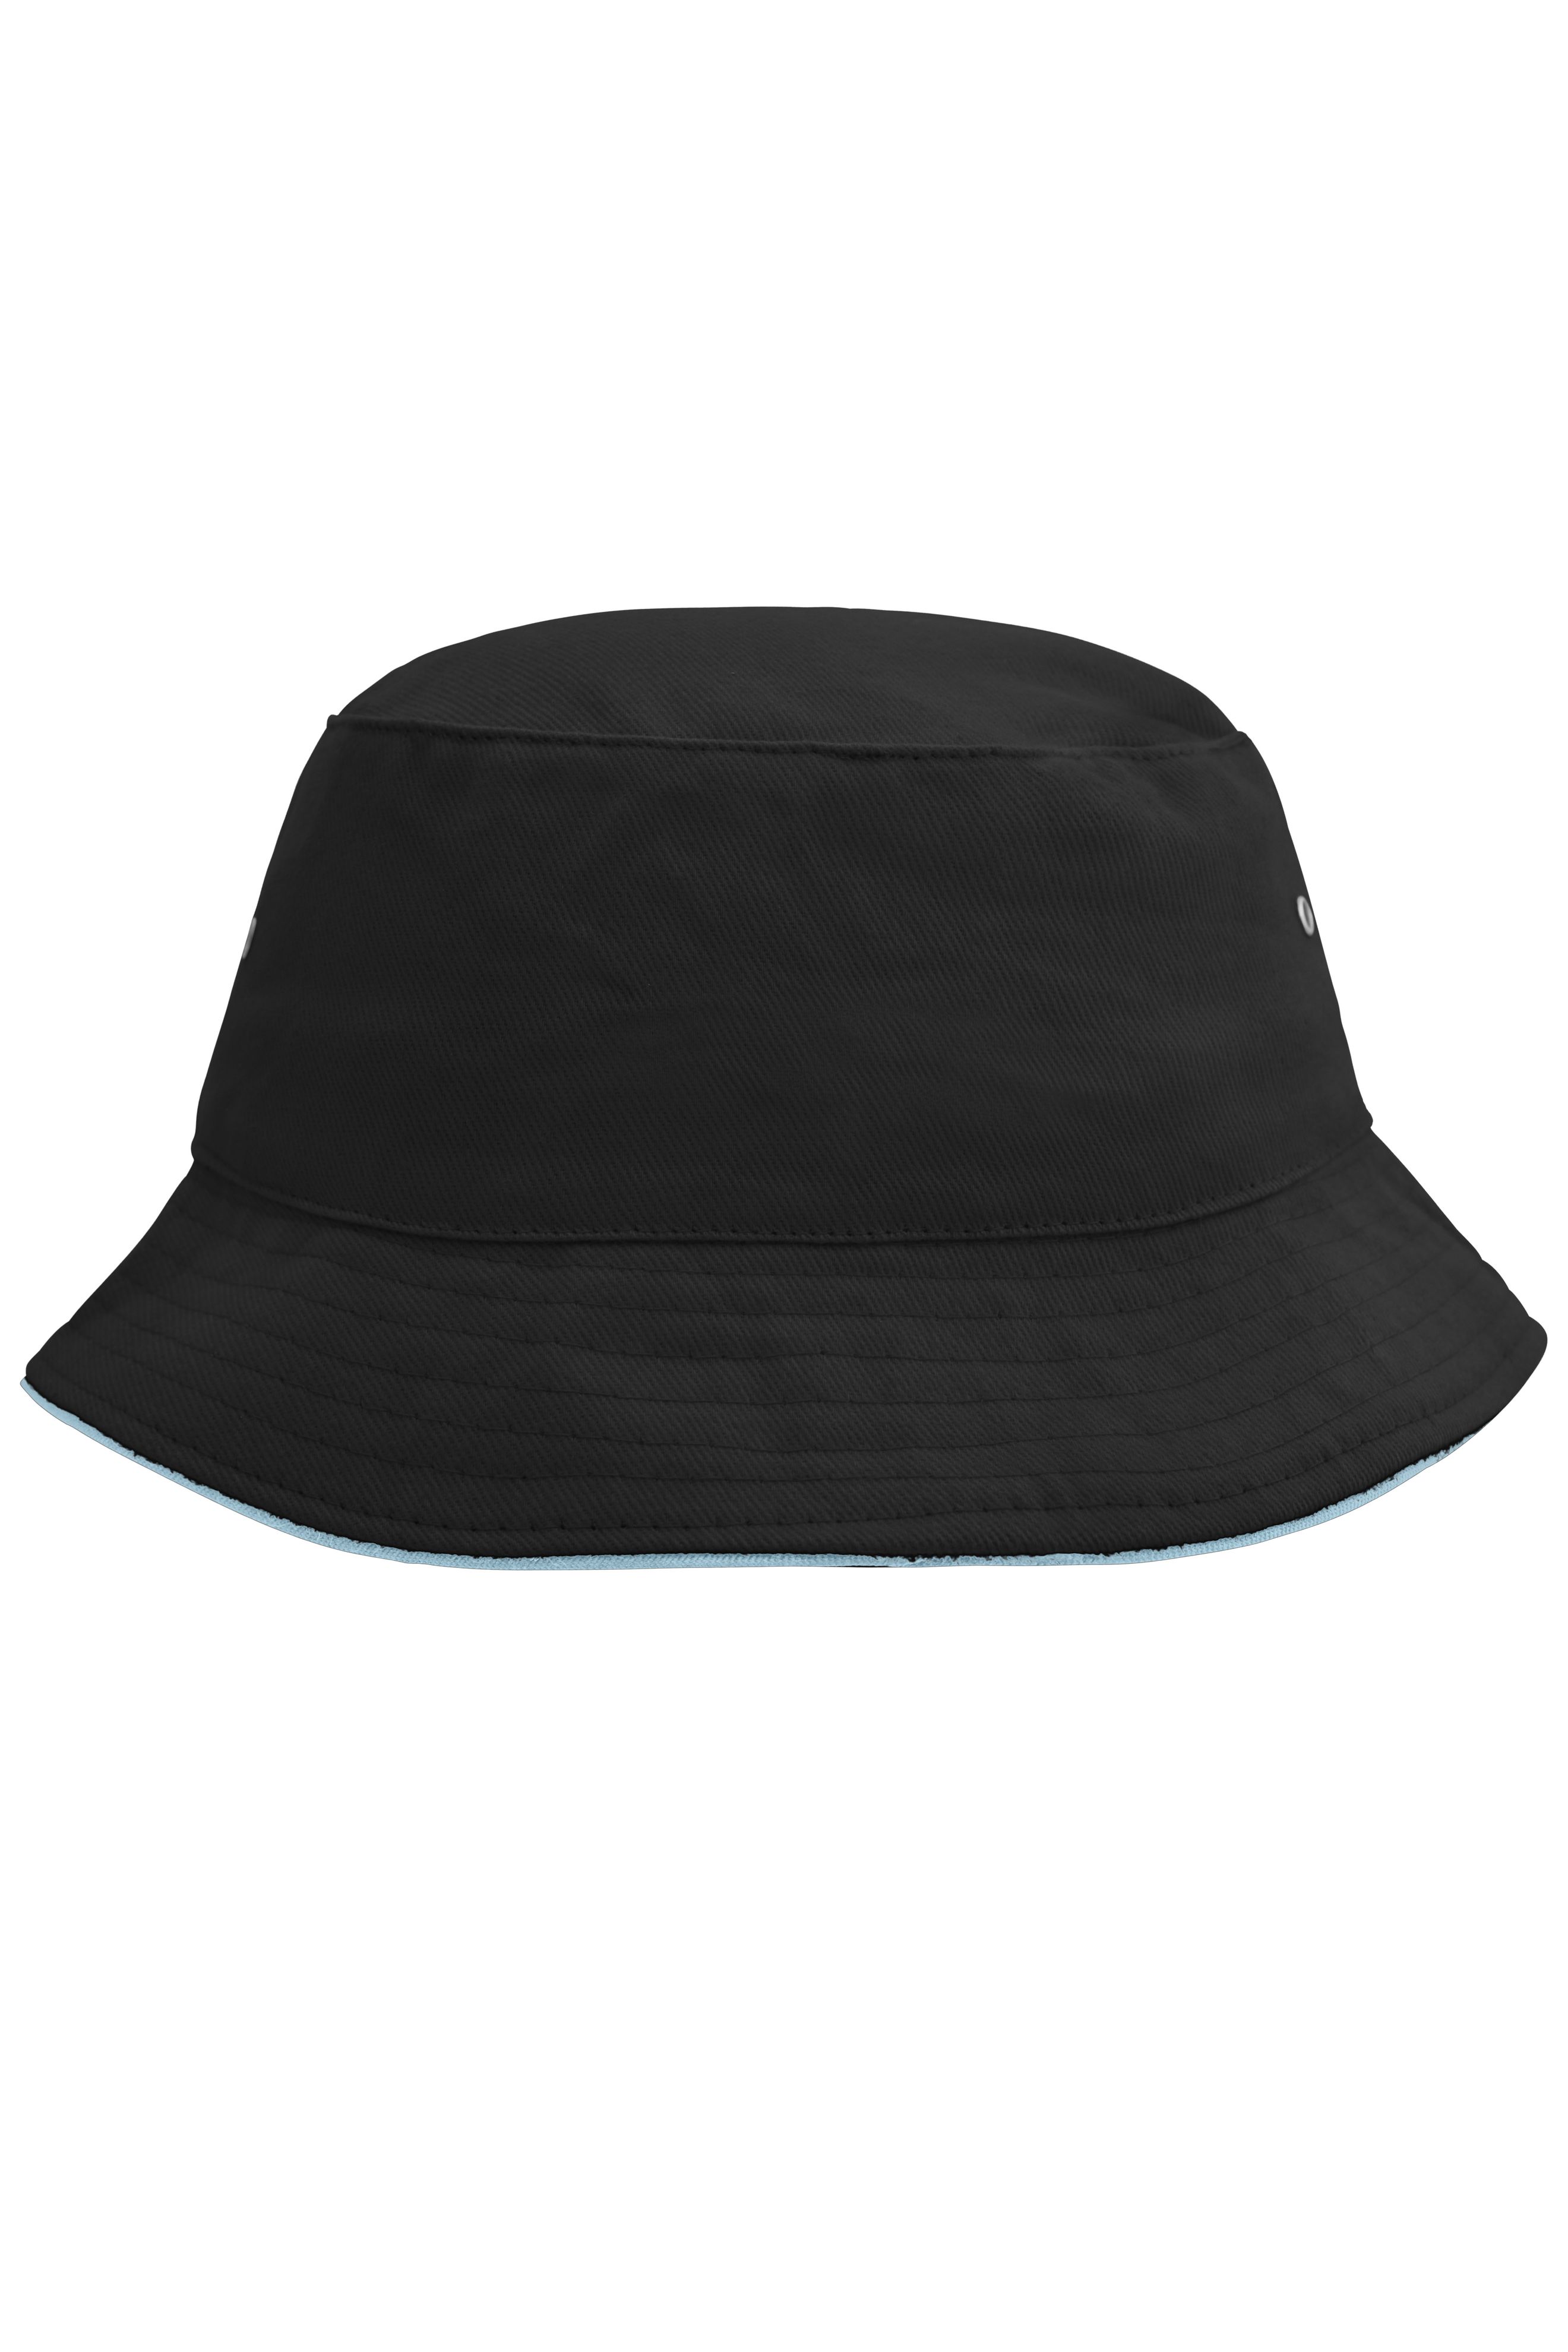 Fisherman Piping Hat MB012 Trendiger Hut aus weicher Baumwolle